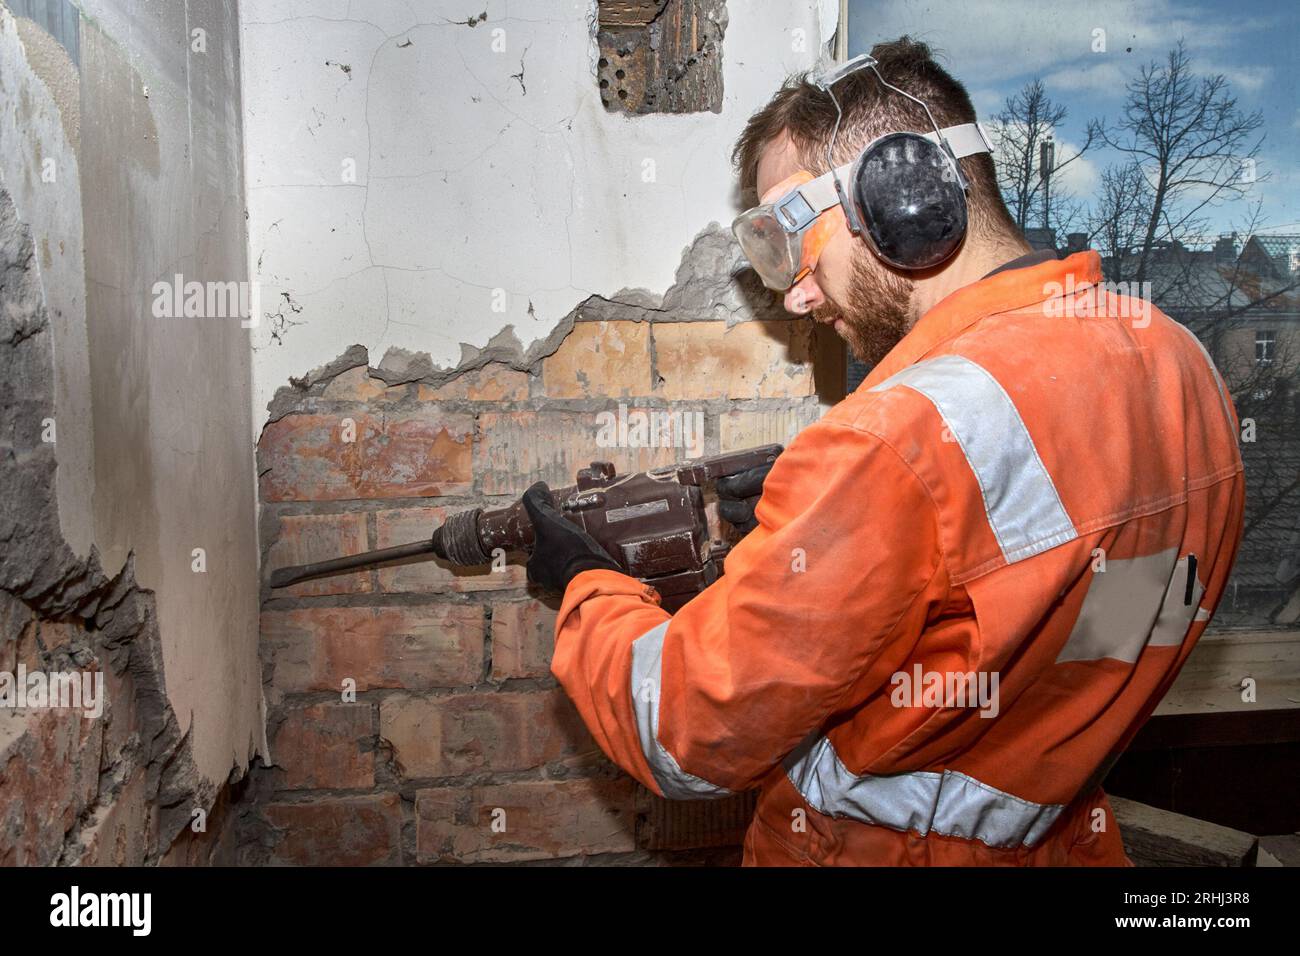 Travailleur de la construction utilisant une perceuse à percussion avec burin pour les travaux de démolition à l'intérieur, portant une combinaison orange et un EPI. Banque D'Images